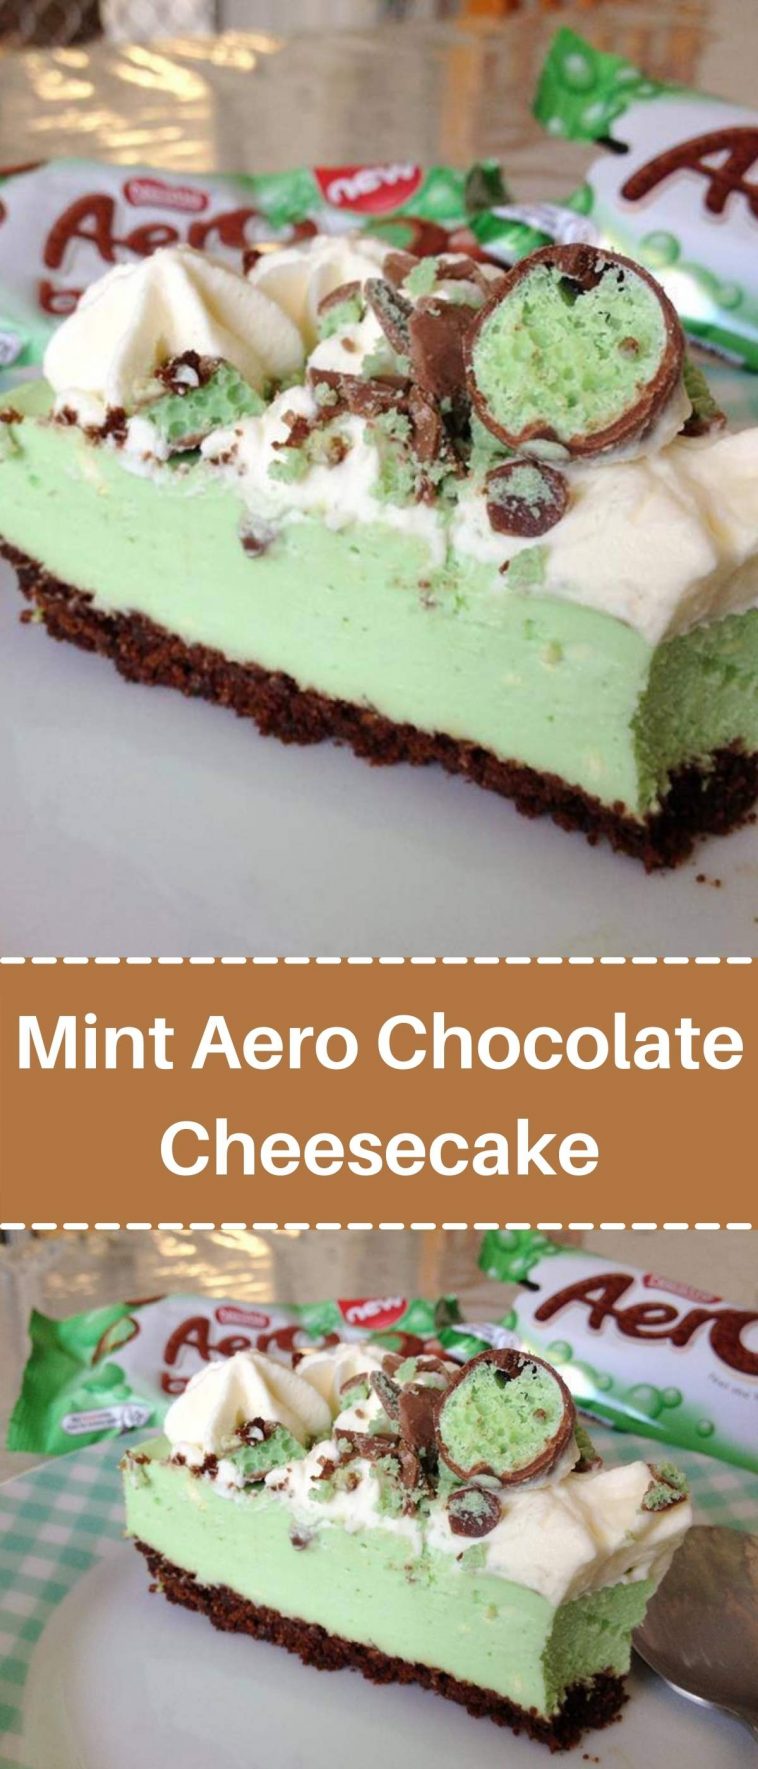 Mint Aero Chocolate Cheesecake